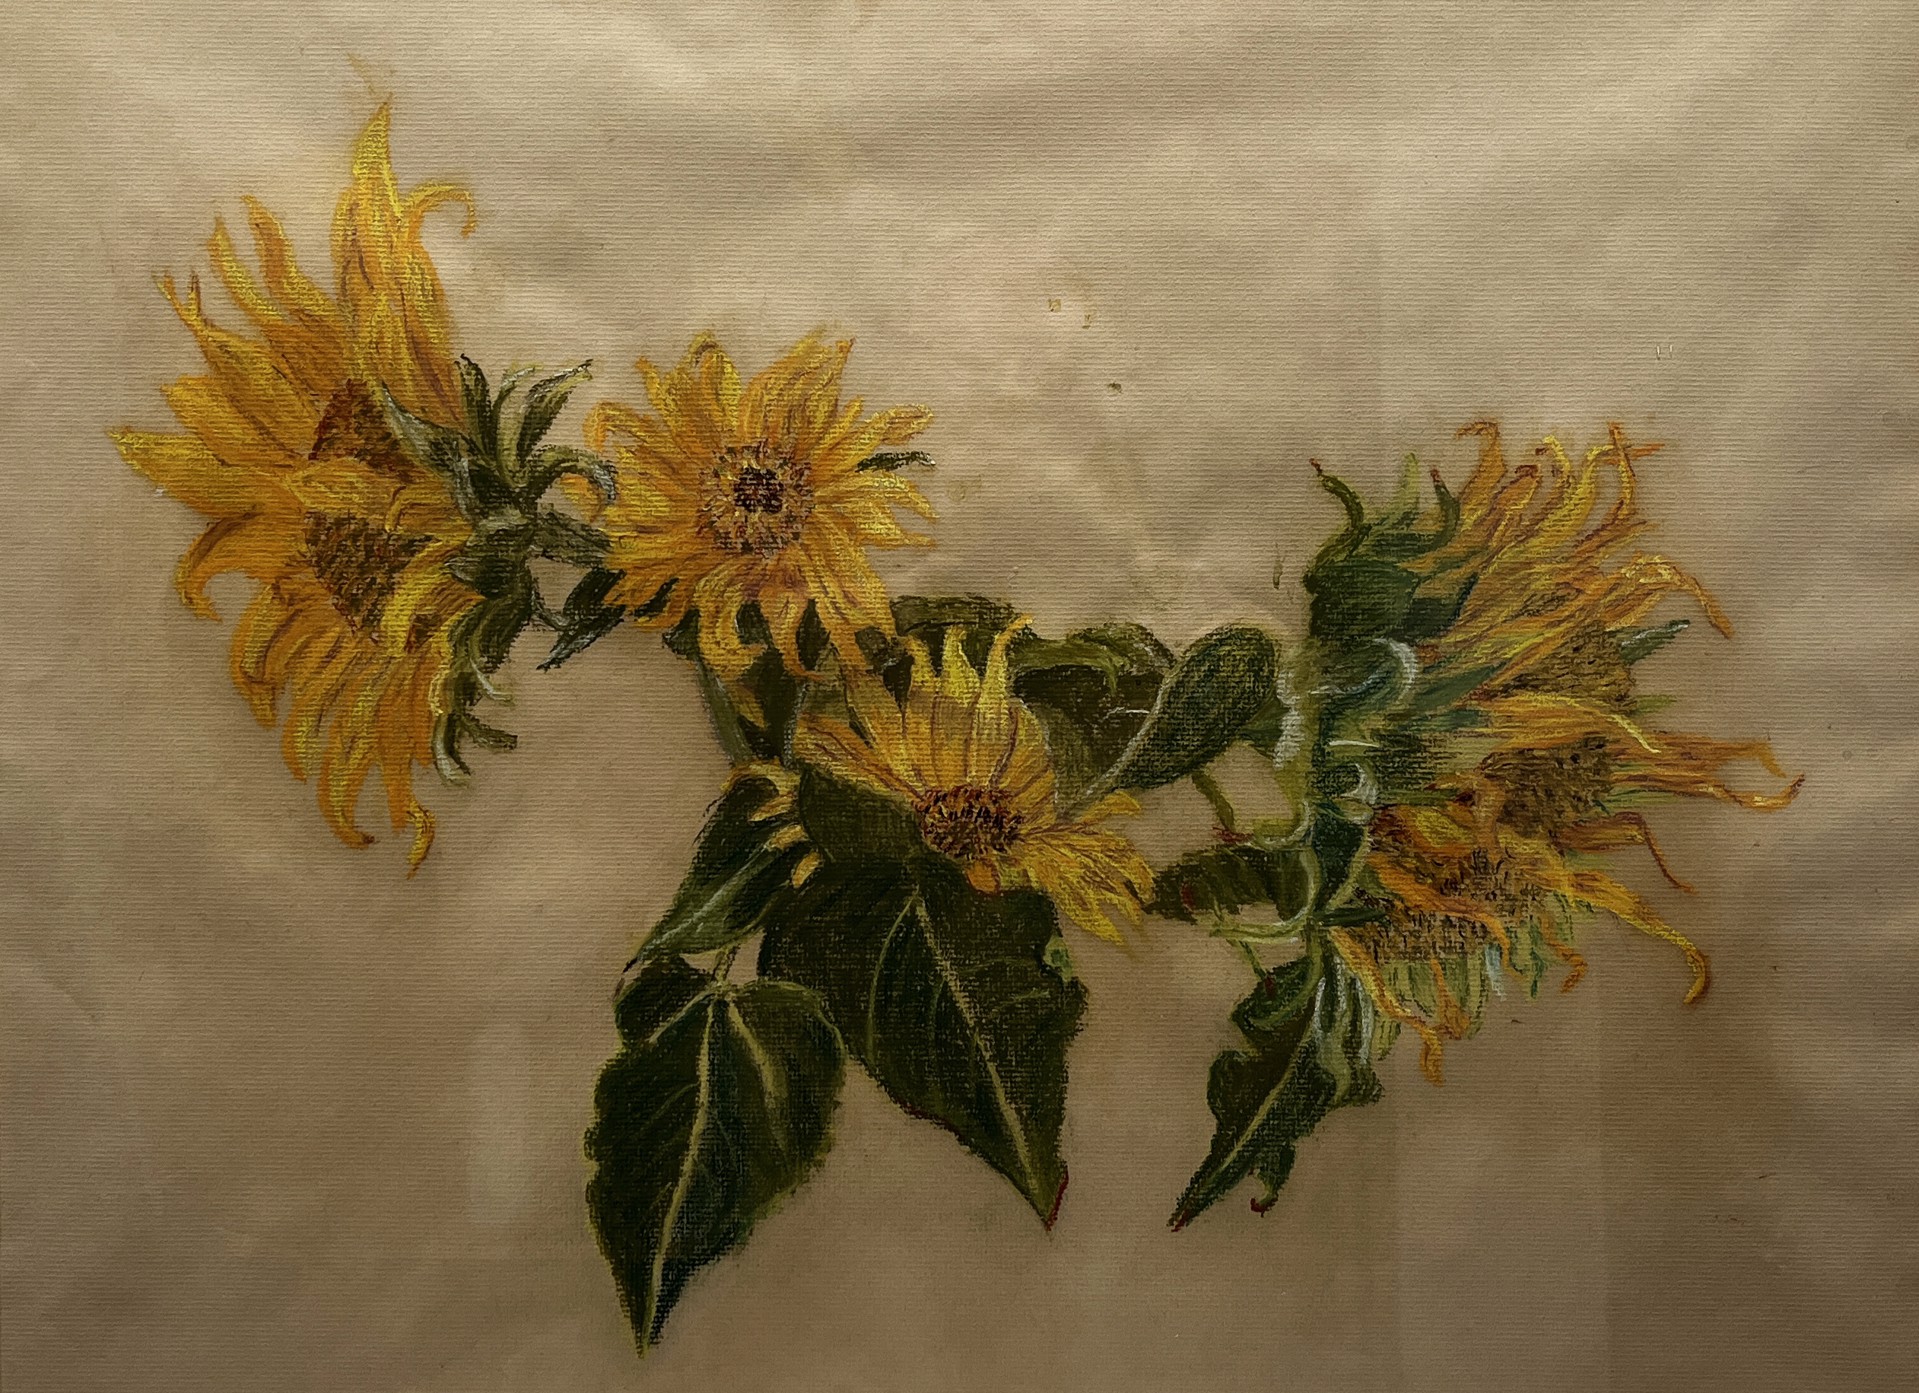 Sunflowers by Ione Gaul Walker